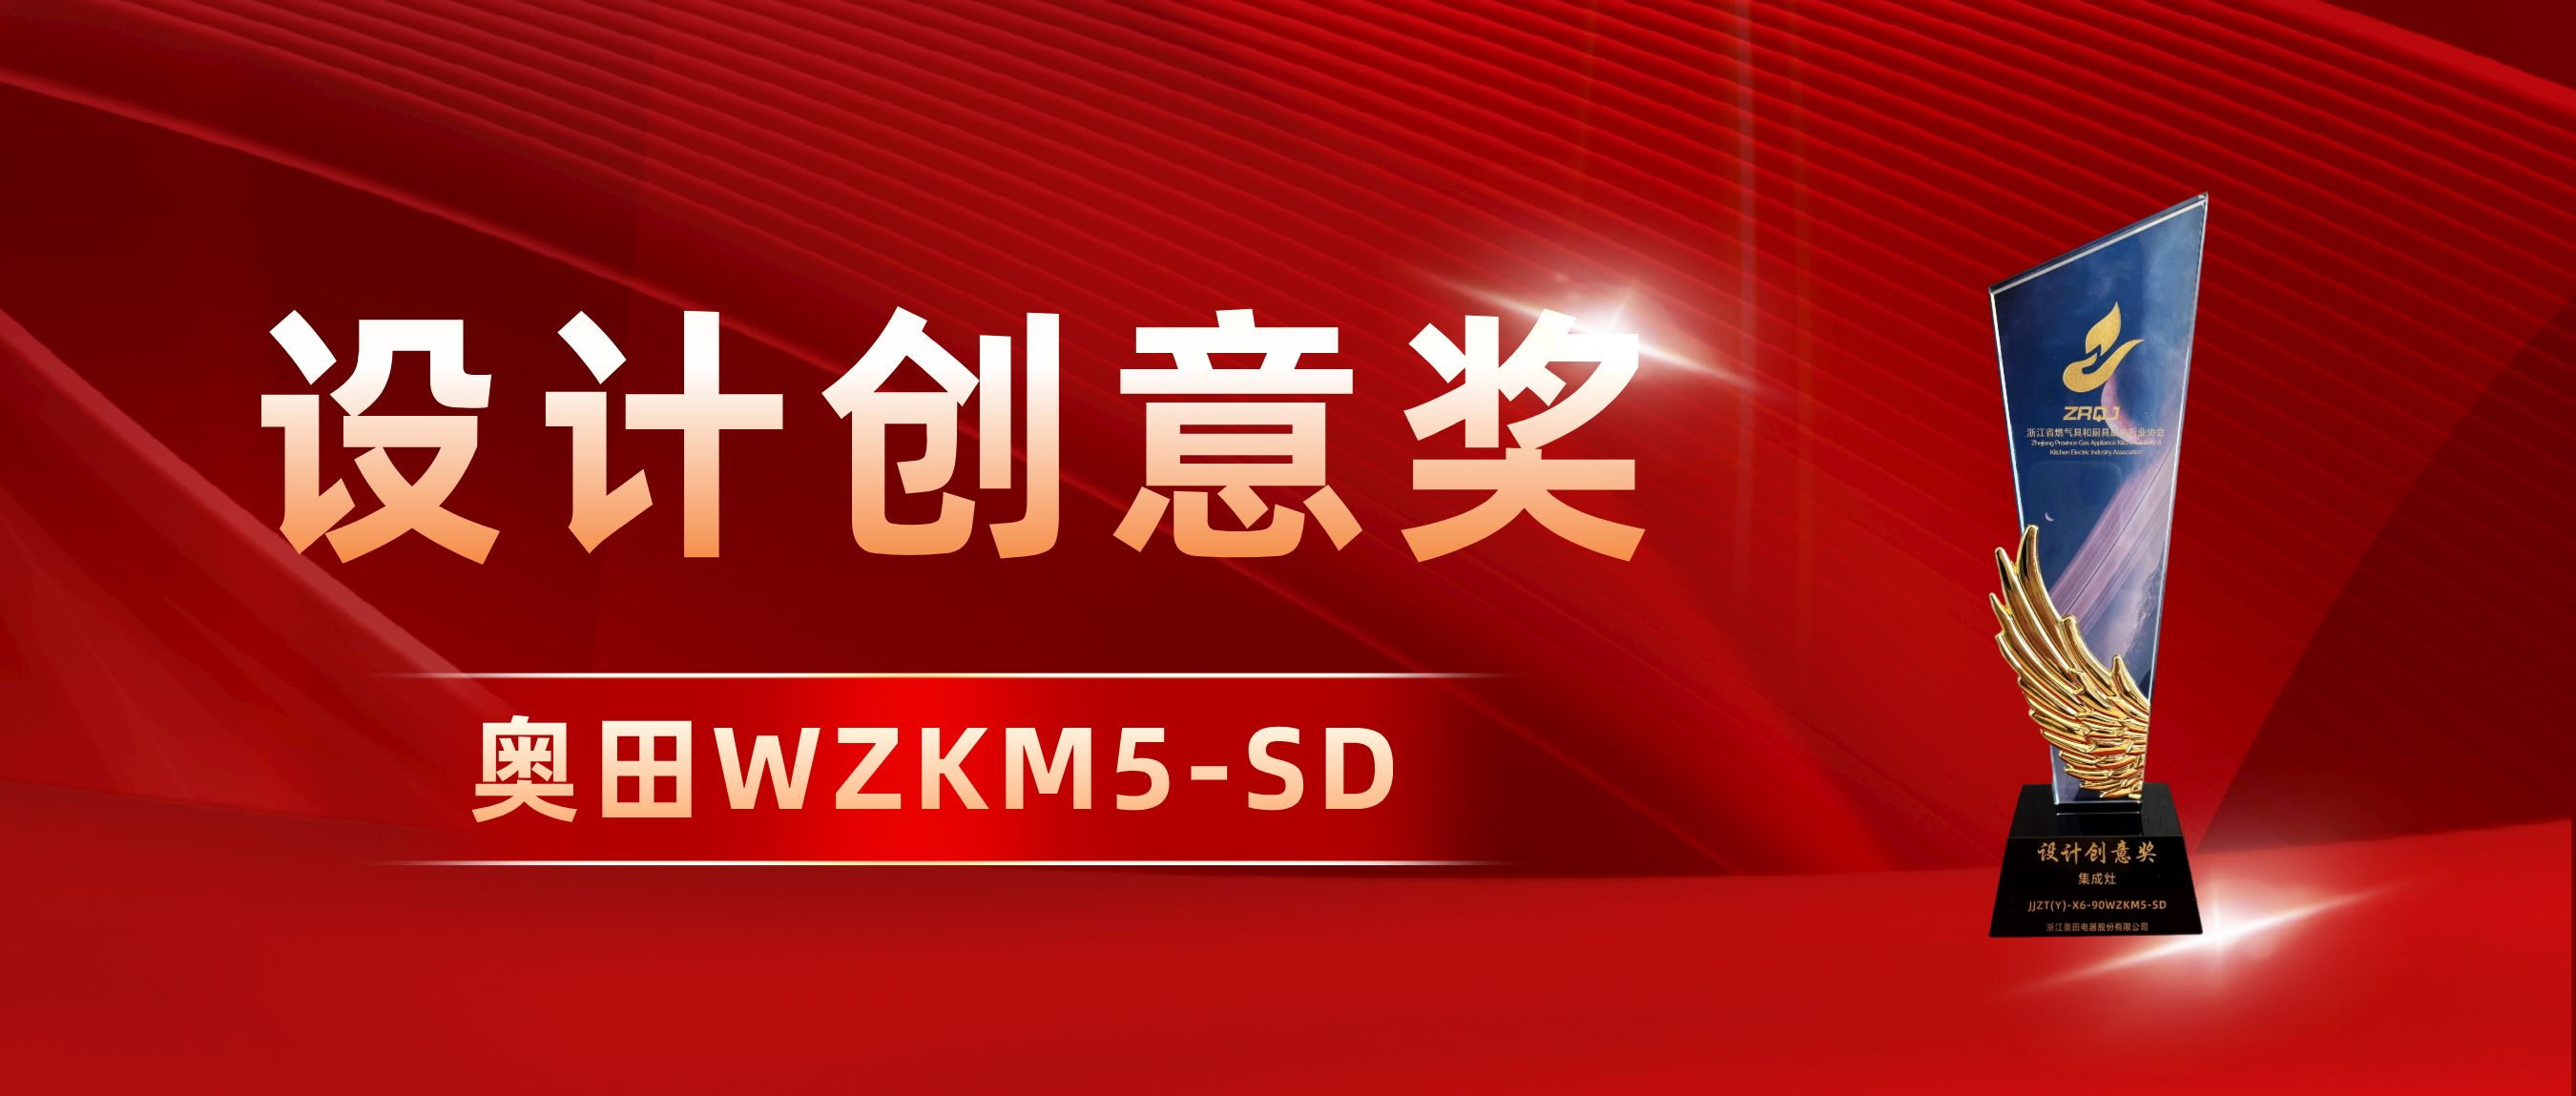 「设计创意奖」——奥田双胆微蒸烤集成灶WZKM5-SD再获认可！